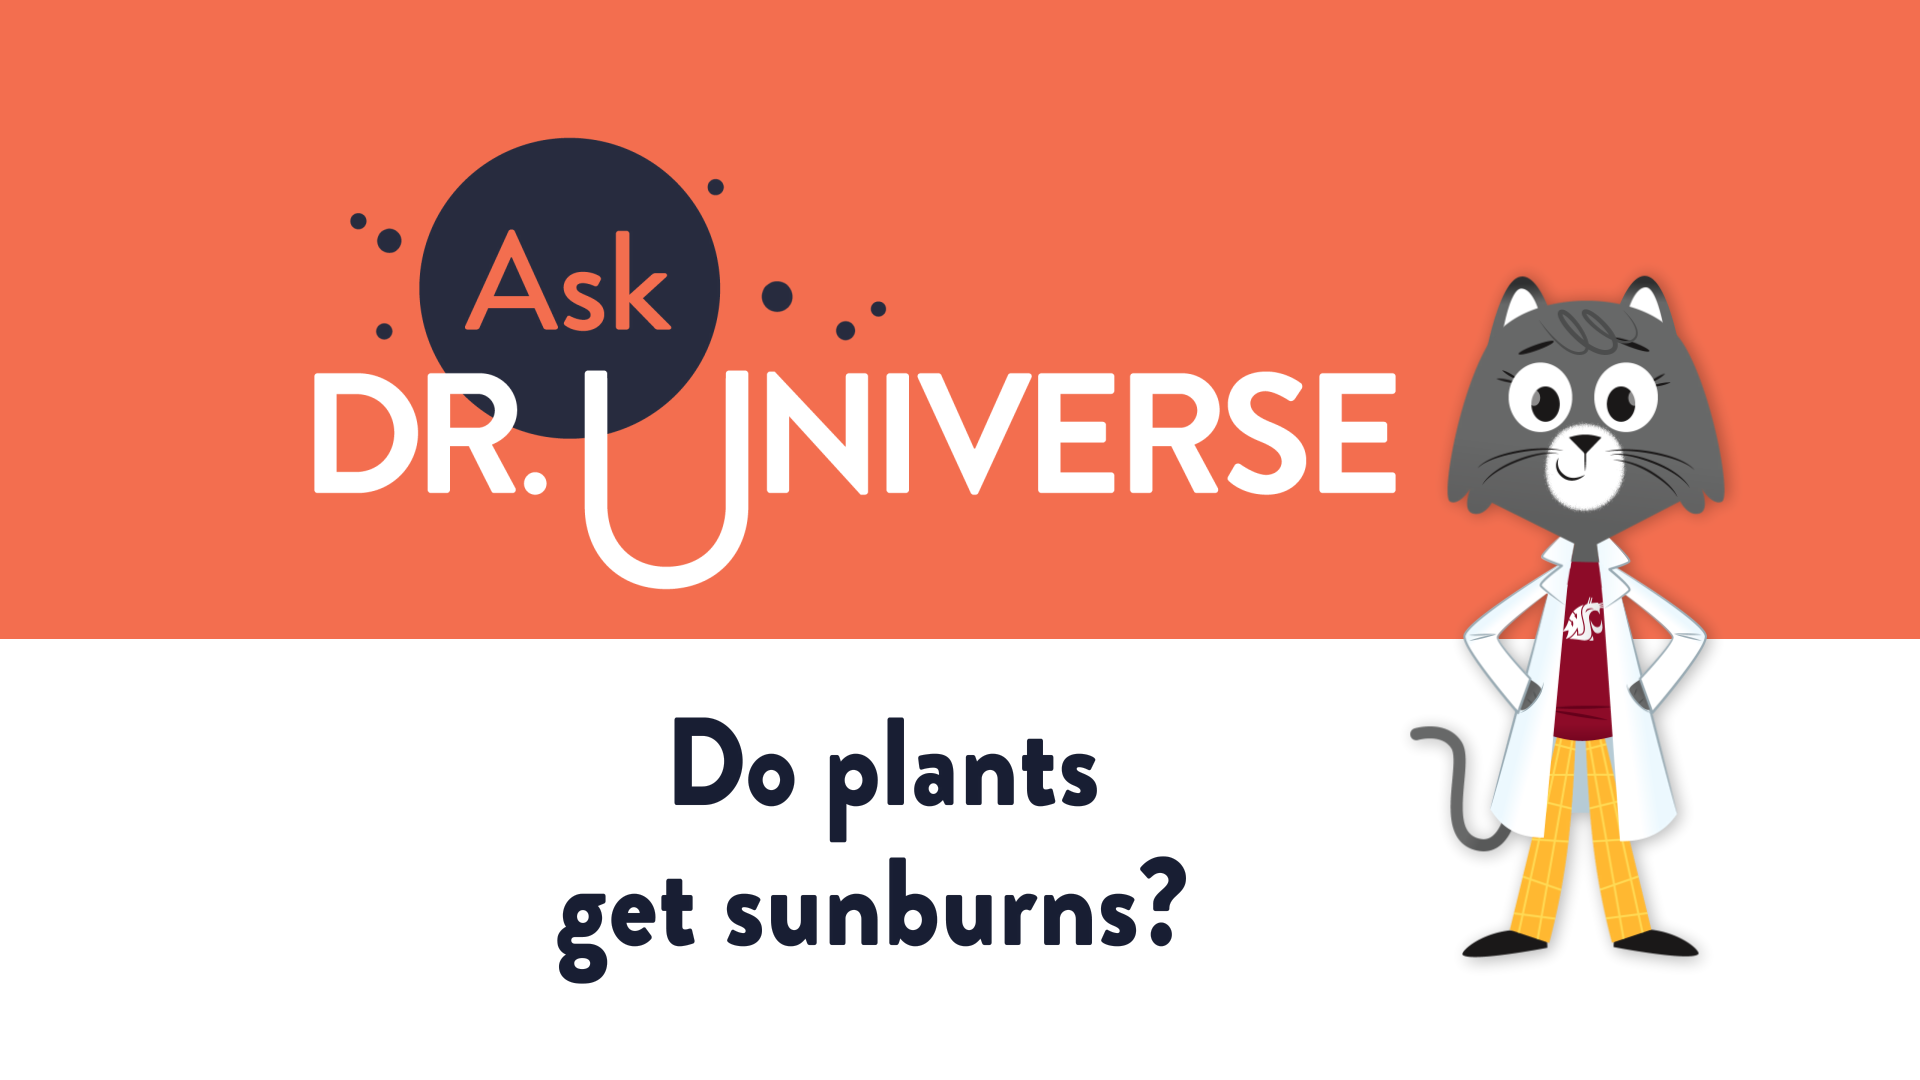 Do plants get sunburns? - Full Screen